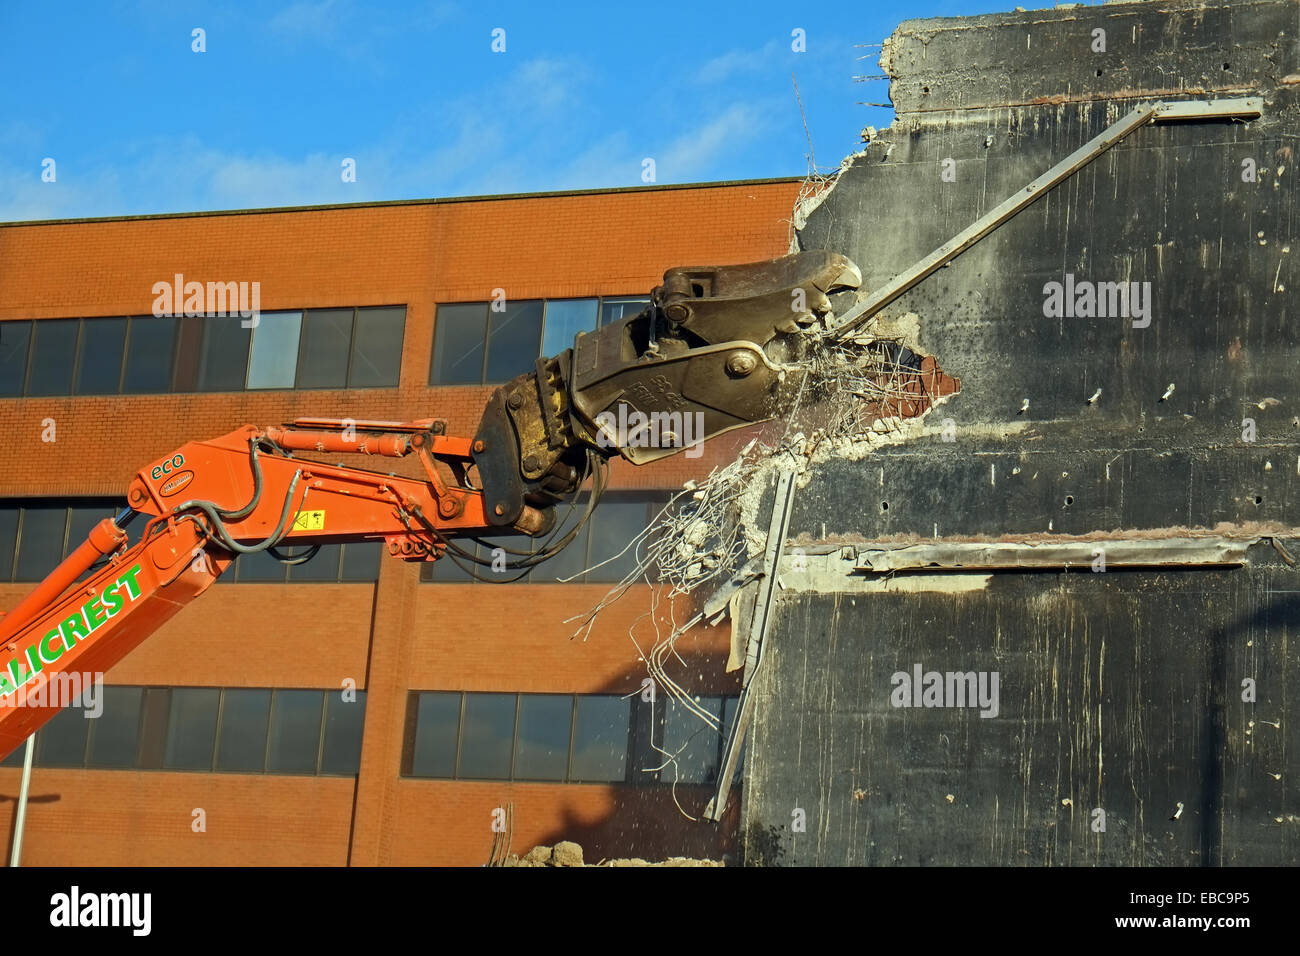 Demolizione - macchine abbattere un edificio vicino all'aeroporto di Heathrow, UK. Foto Stock